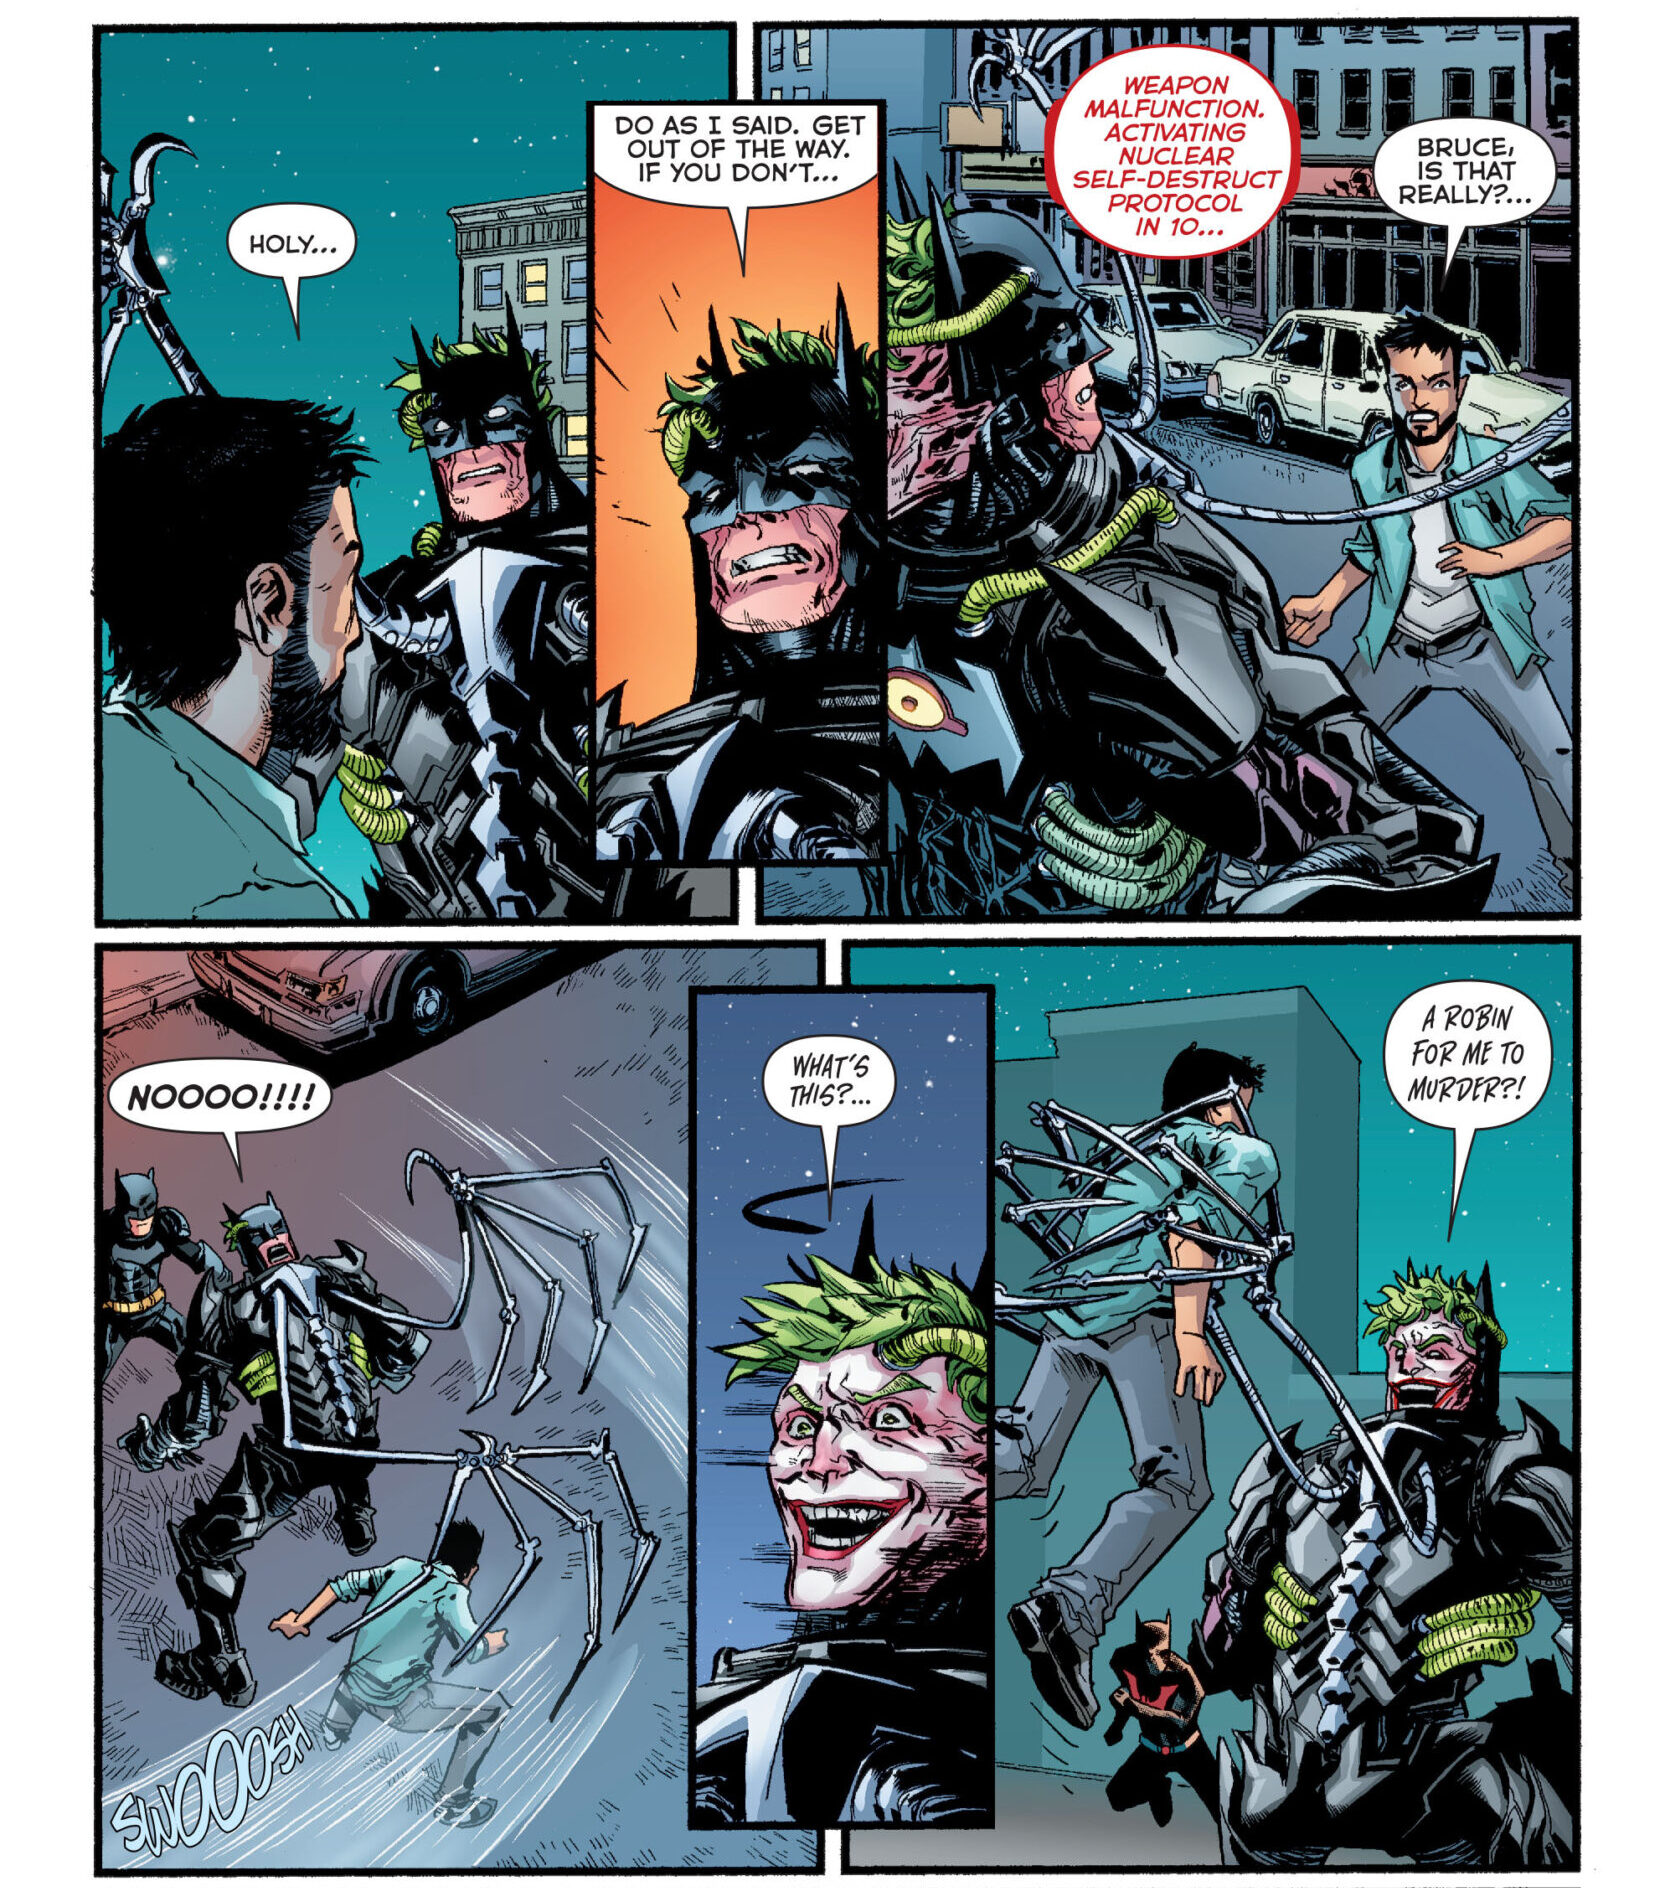 O híbrido Batman-Joker está de olho em Tim Drake em The New 52: Futures End Vol. 1 38 “Capítulo 38” (2015), DC